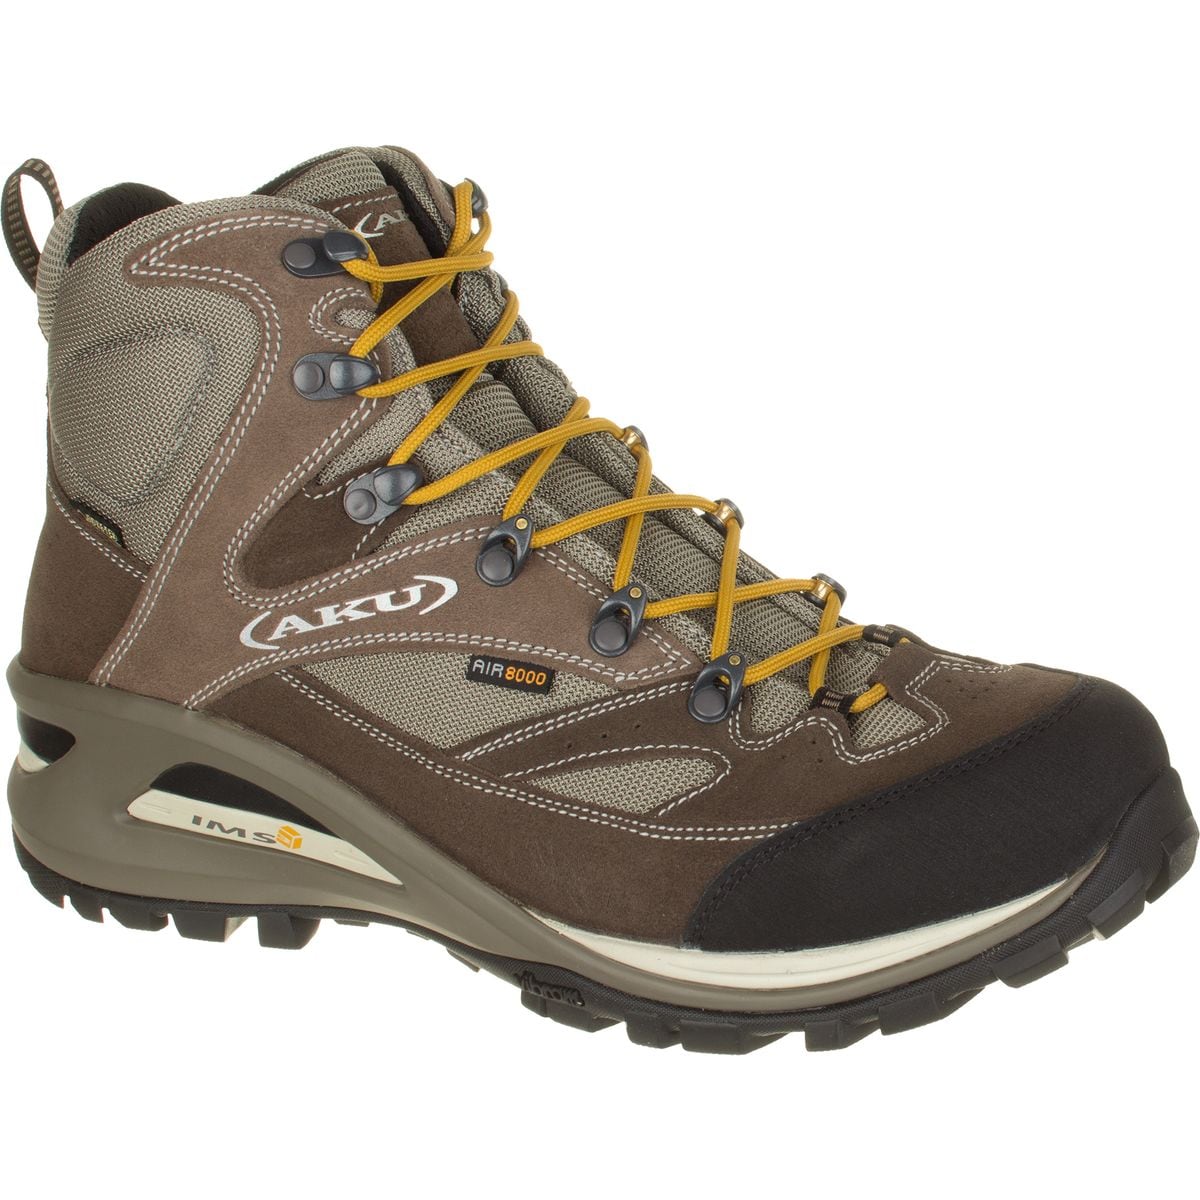 AKU Transalpina GTX Hiking Boot - Men's | eBay